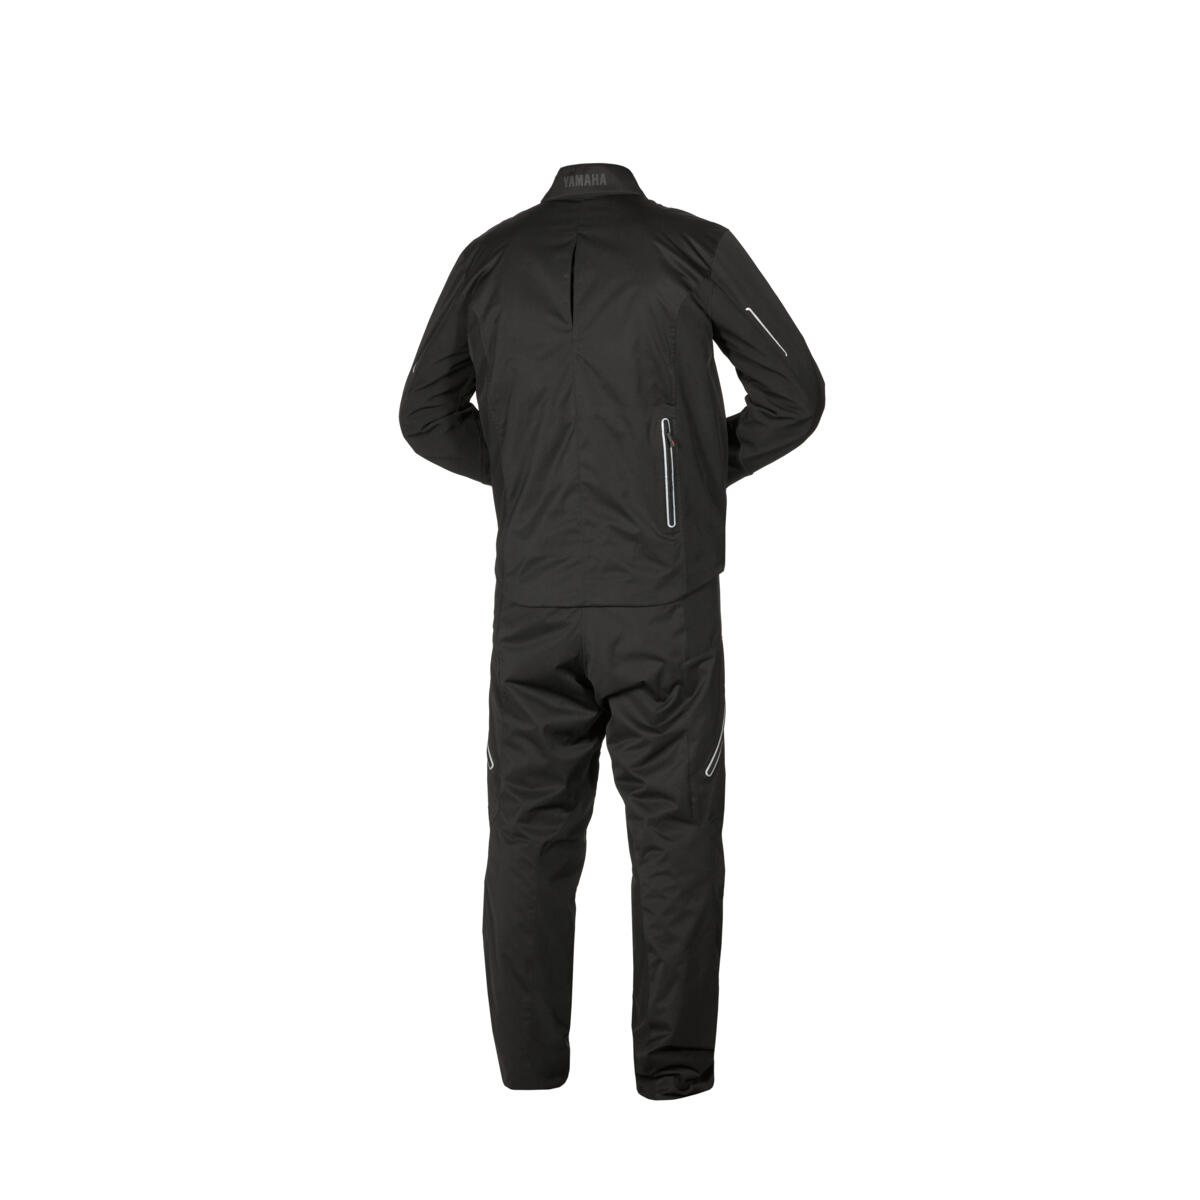 2 in 1 Hose aus dünnem Nylon, kombiniert mit Softshell. Die Hose kann mit der Sport-Touring-Jacke kombiniert werden, damit alles komplett zusammenpasst. Es ist eine Hose für alle Jahreszeiten, die Sie bei allen Wetterbedingungen schützt.